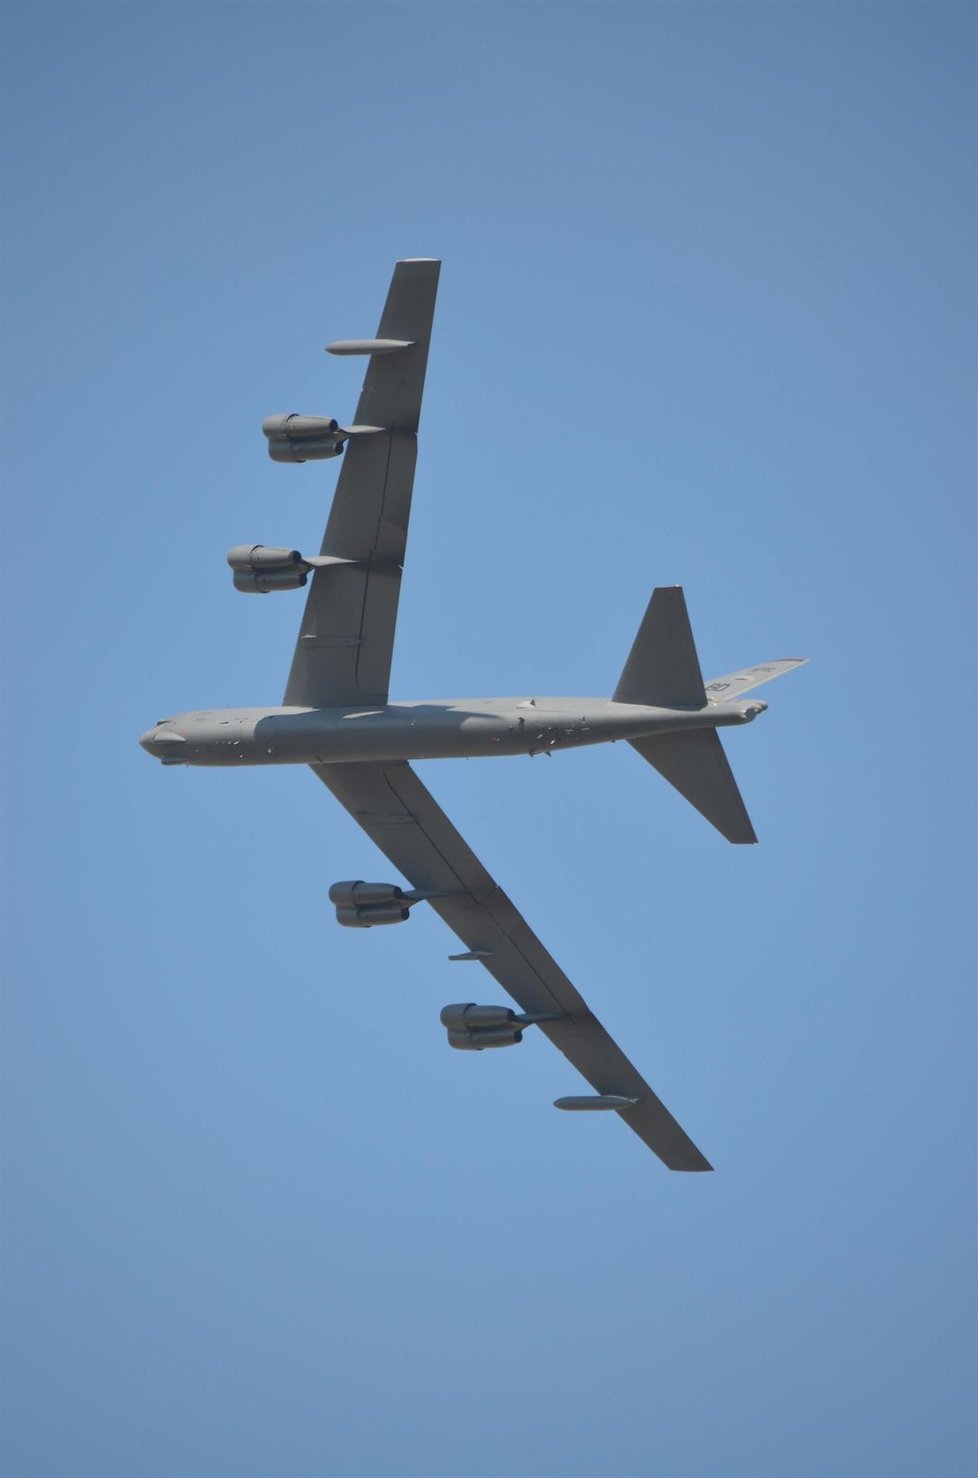 B-52 se nad mošnovským letištěm proletěl po třech letech. V oknech měl po příletu vlajky USA a ČR.